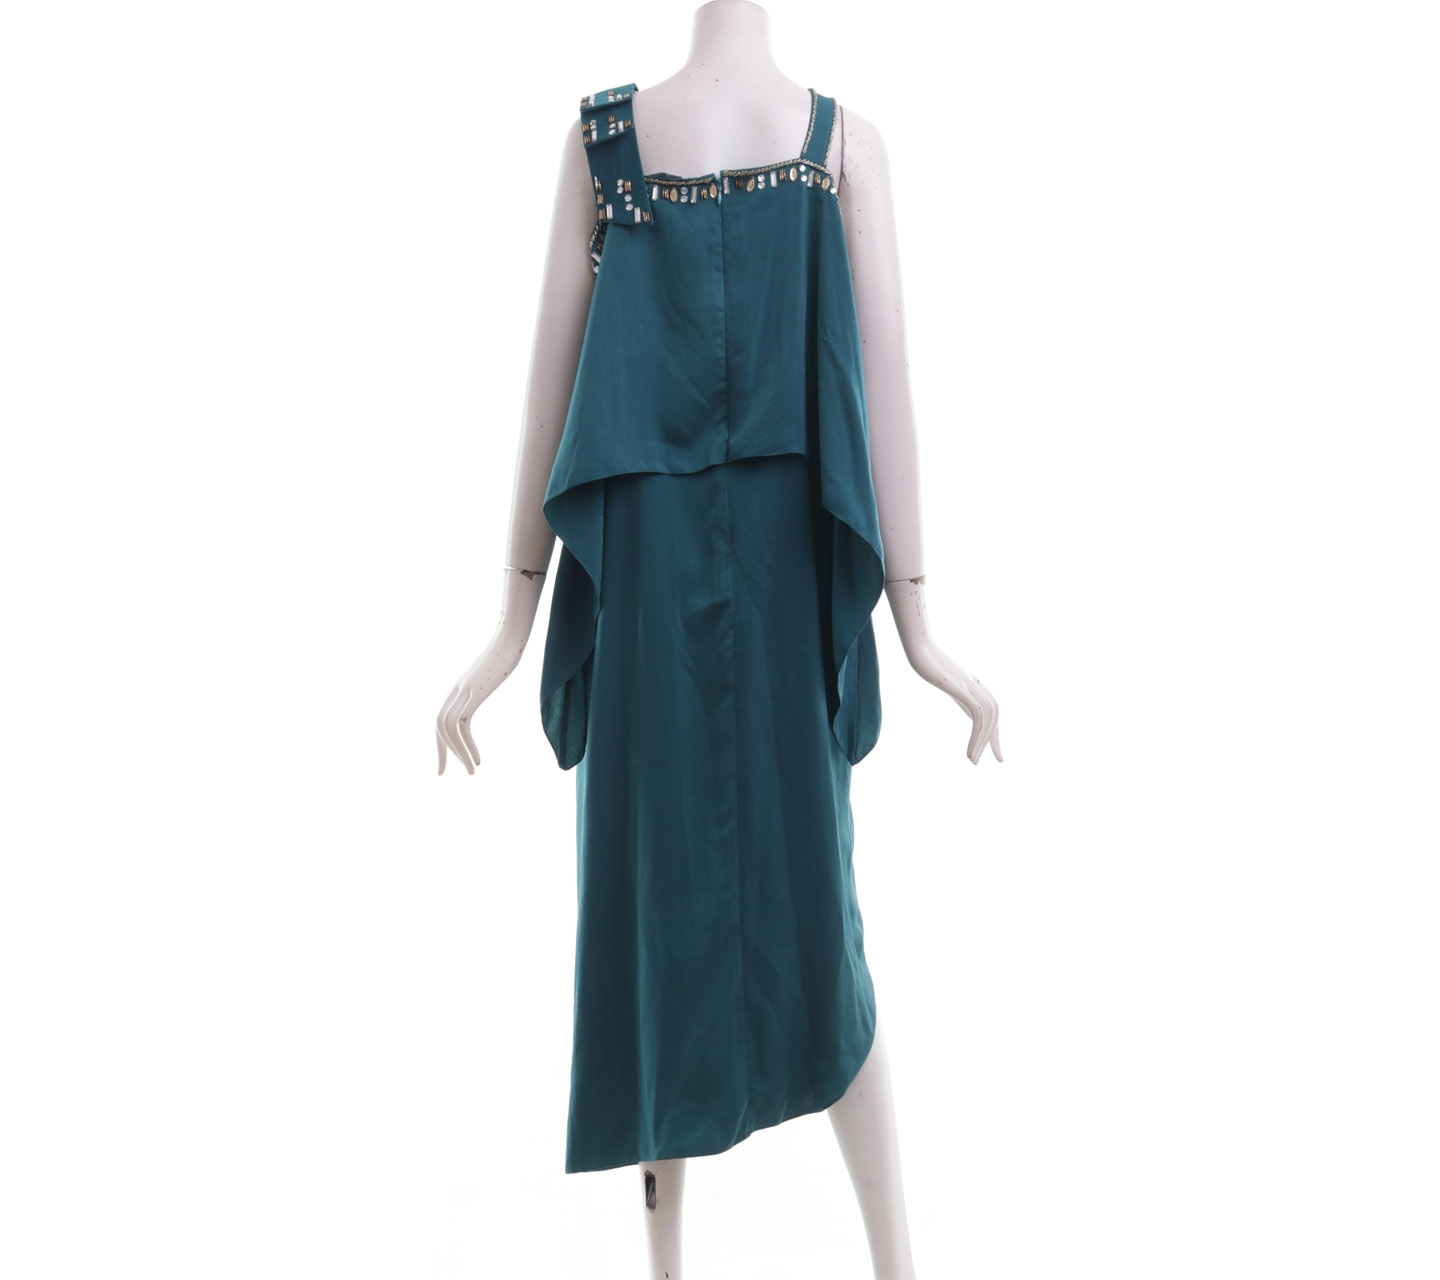 Ava Green Beaded Caftan Long Dress